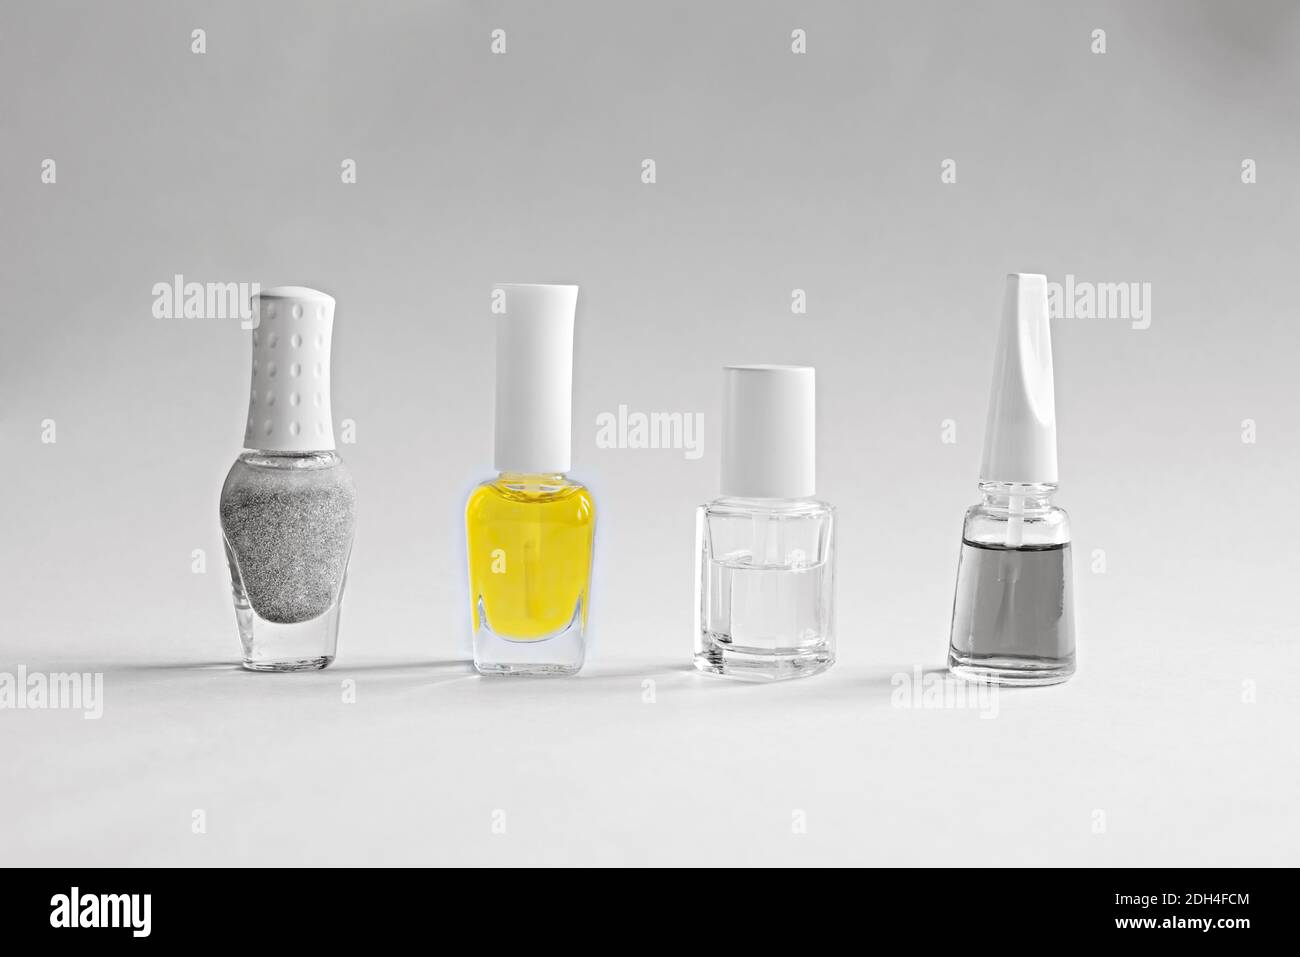 Una serie di prodotti per la cura delle unghie. Bottiglie con vernice per manicure grigia, trasparente e gialla. Colori dell'anno 2021. Foto Stock